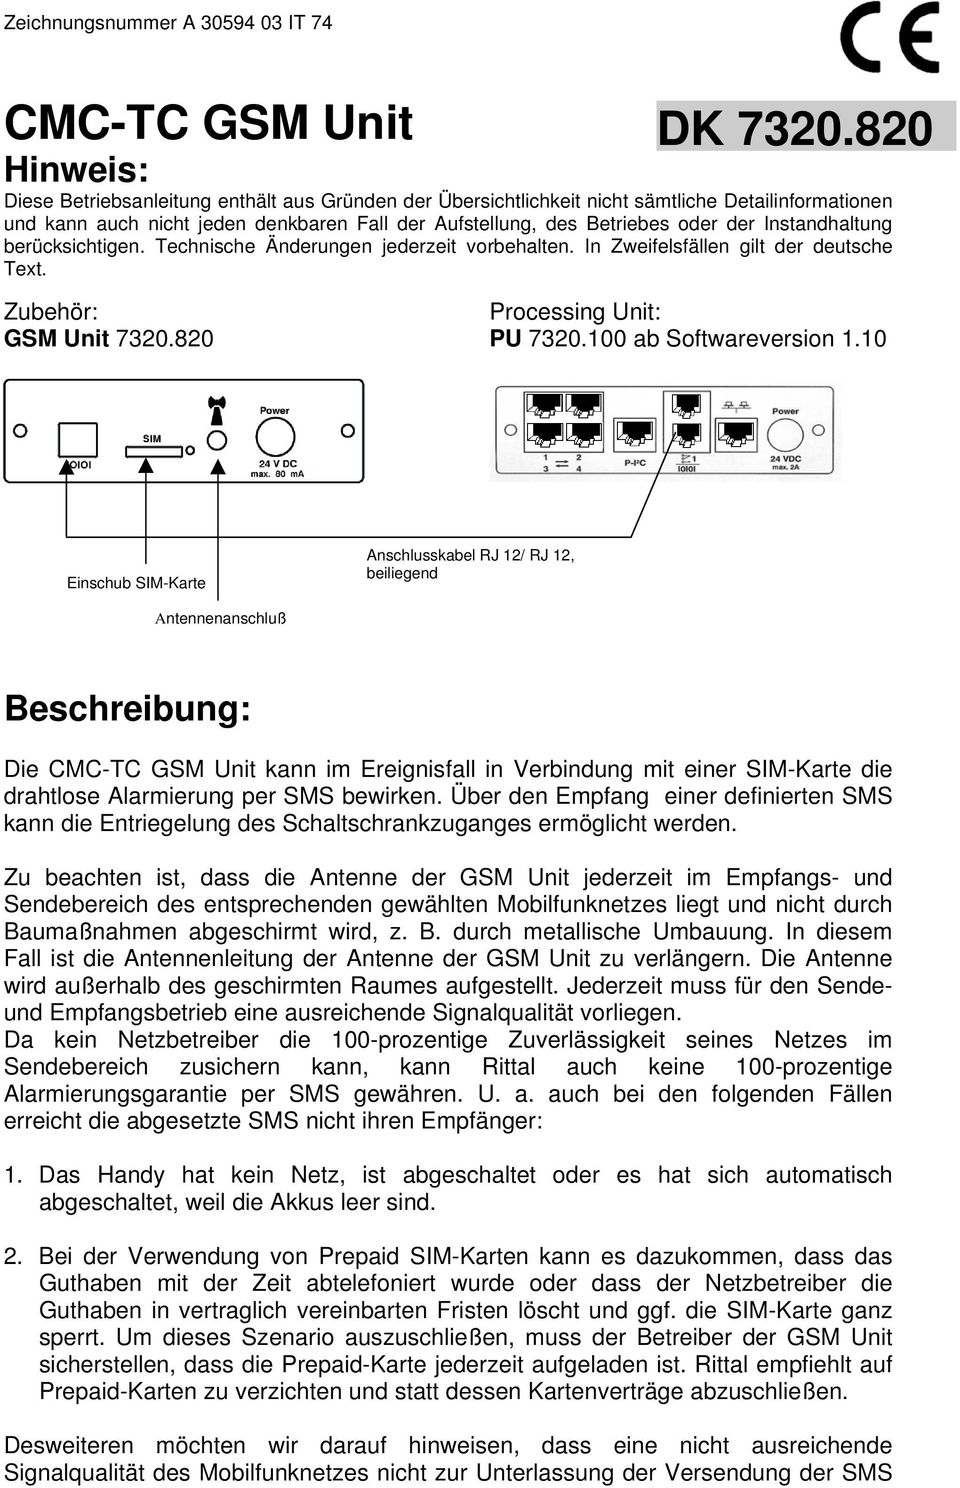 Instandhaltung berücksichtigen. Technische Änderungen jederzeit vorbehalten. In Zweifelsfällen gilt der deutsche Text. Zubehör: Processing Unit: GSM Unit 7320.820 PU 7320.100 ab Softwareversion 1.